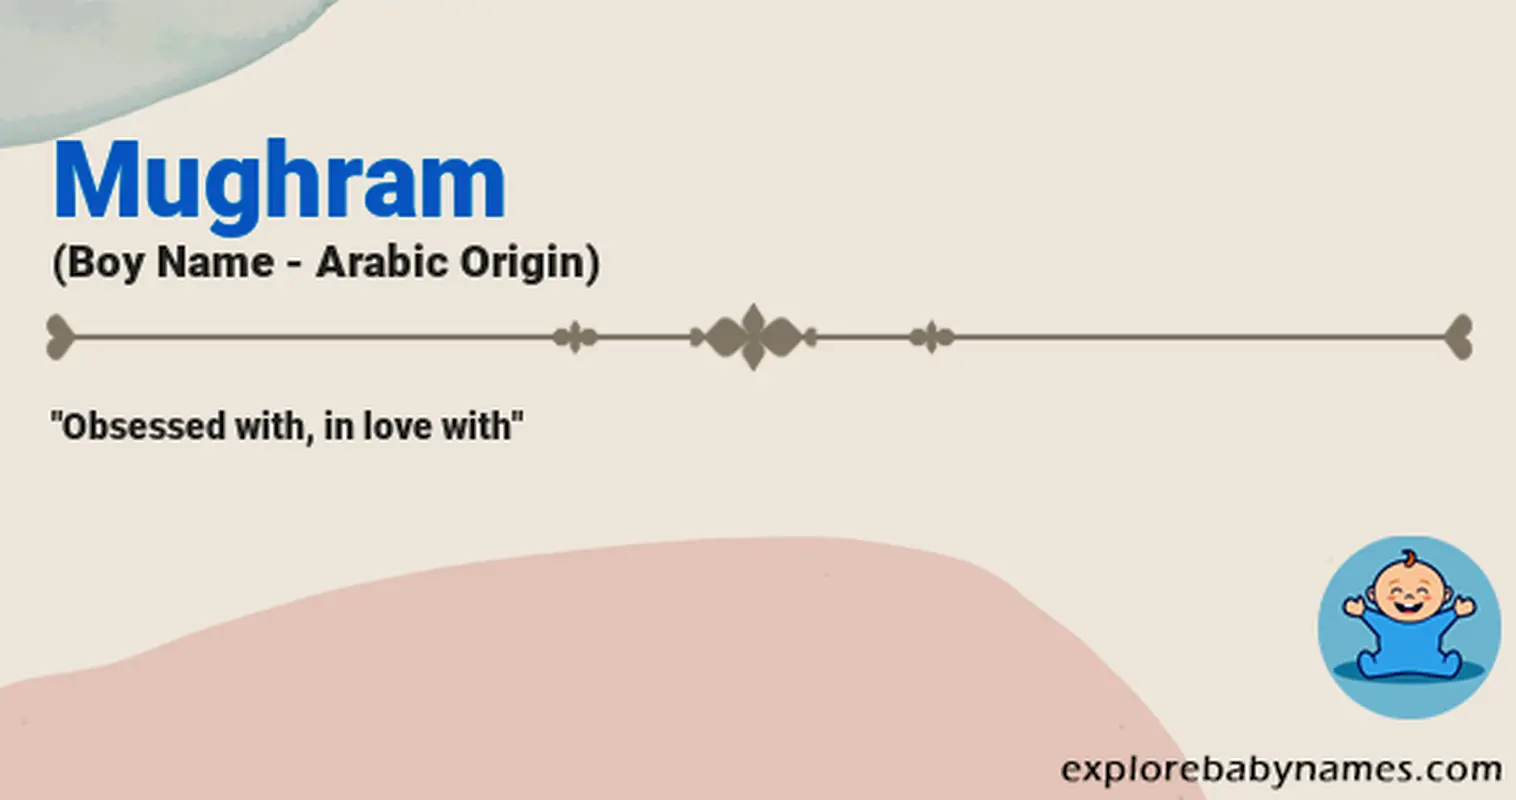 Meaning of Mughram